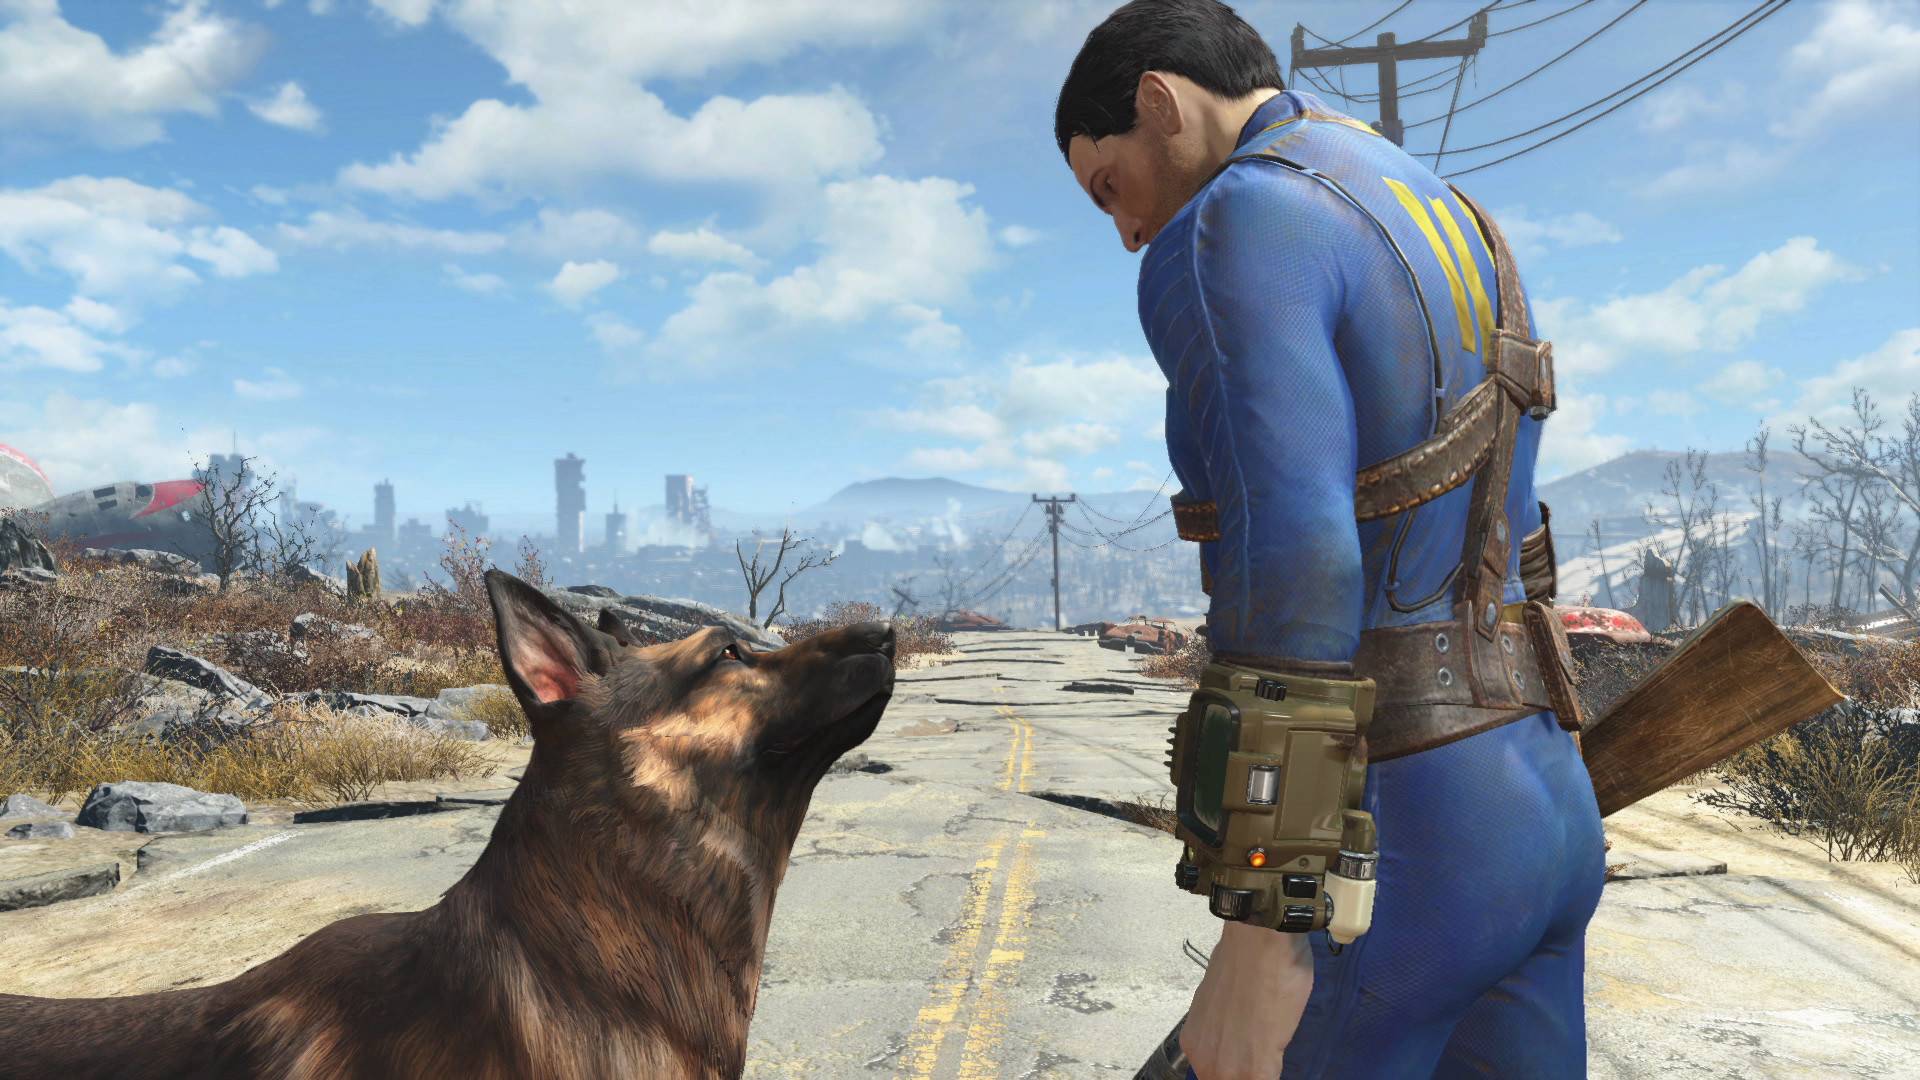 Le succès de la série TV Fallout a causé des soucis à la plateforme de modding Nexus